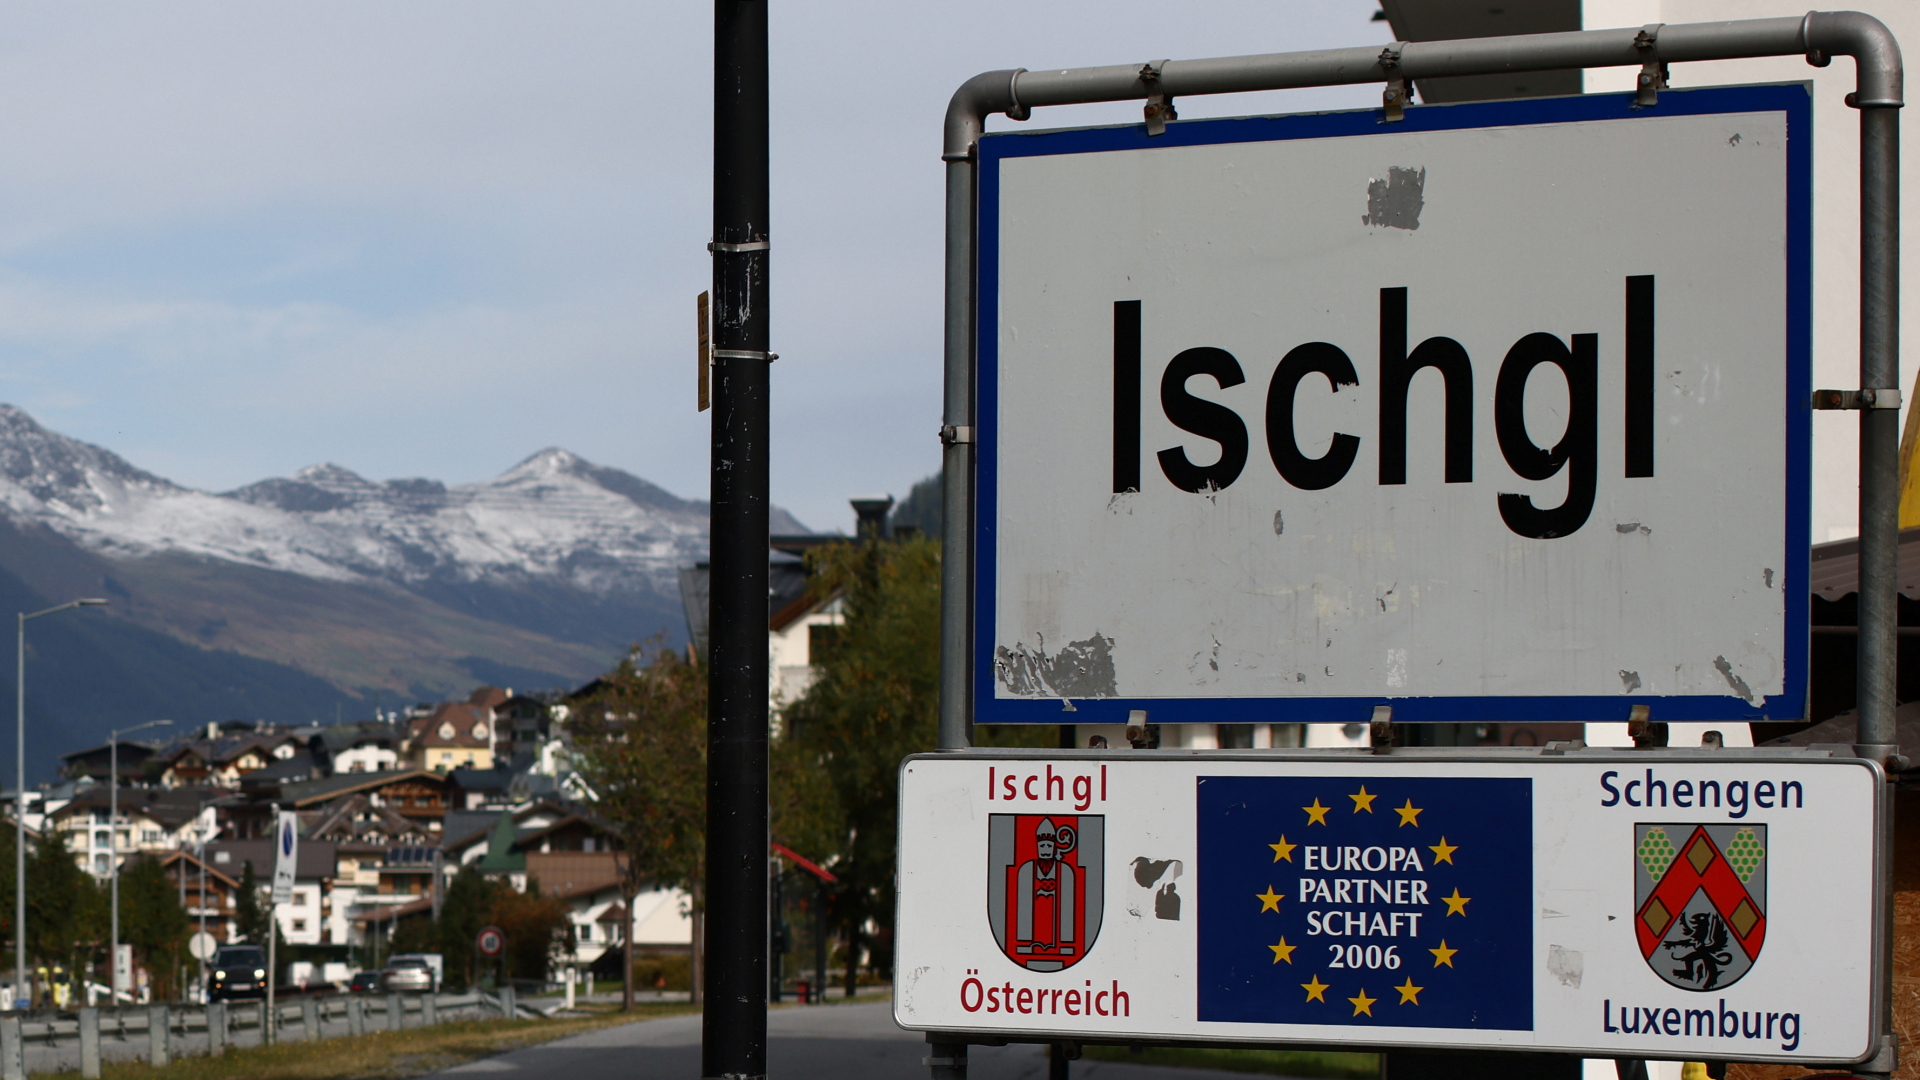 Das Ortsschild des österreichischen Ski-Orts Ischgl